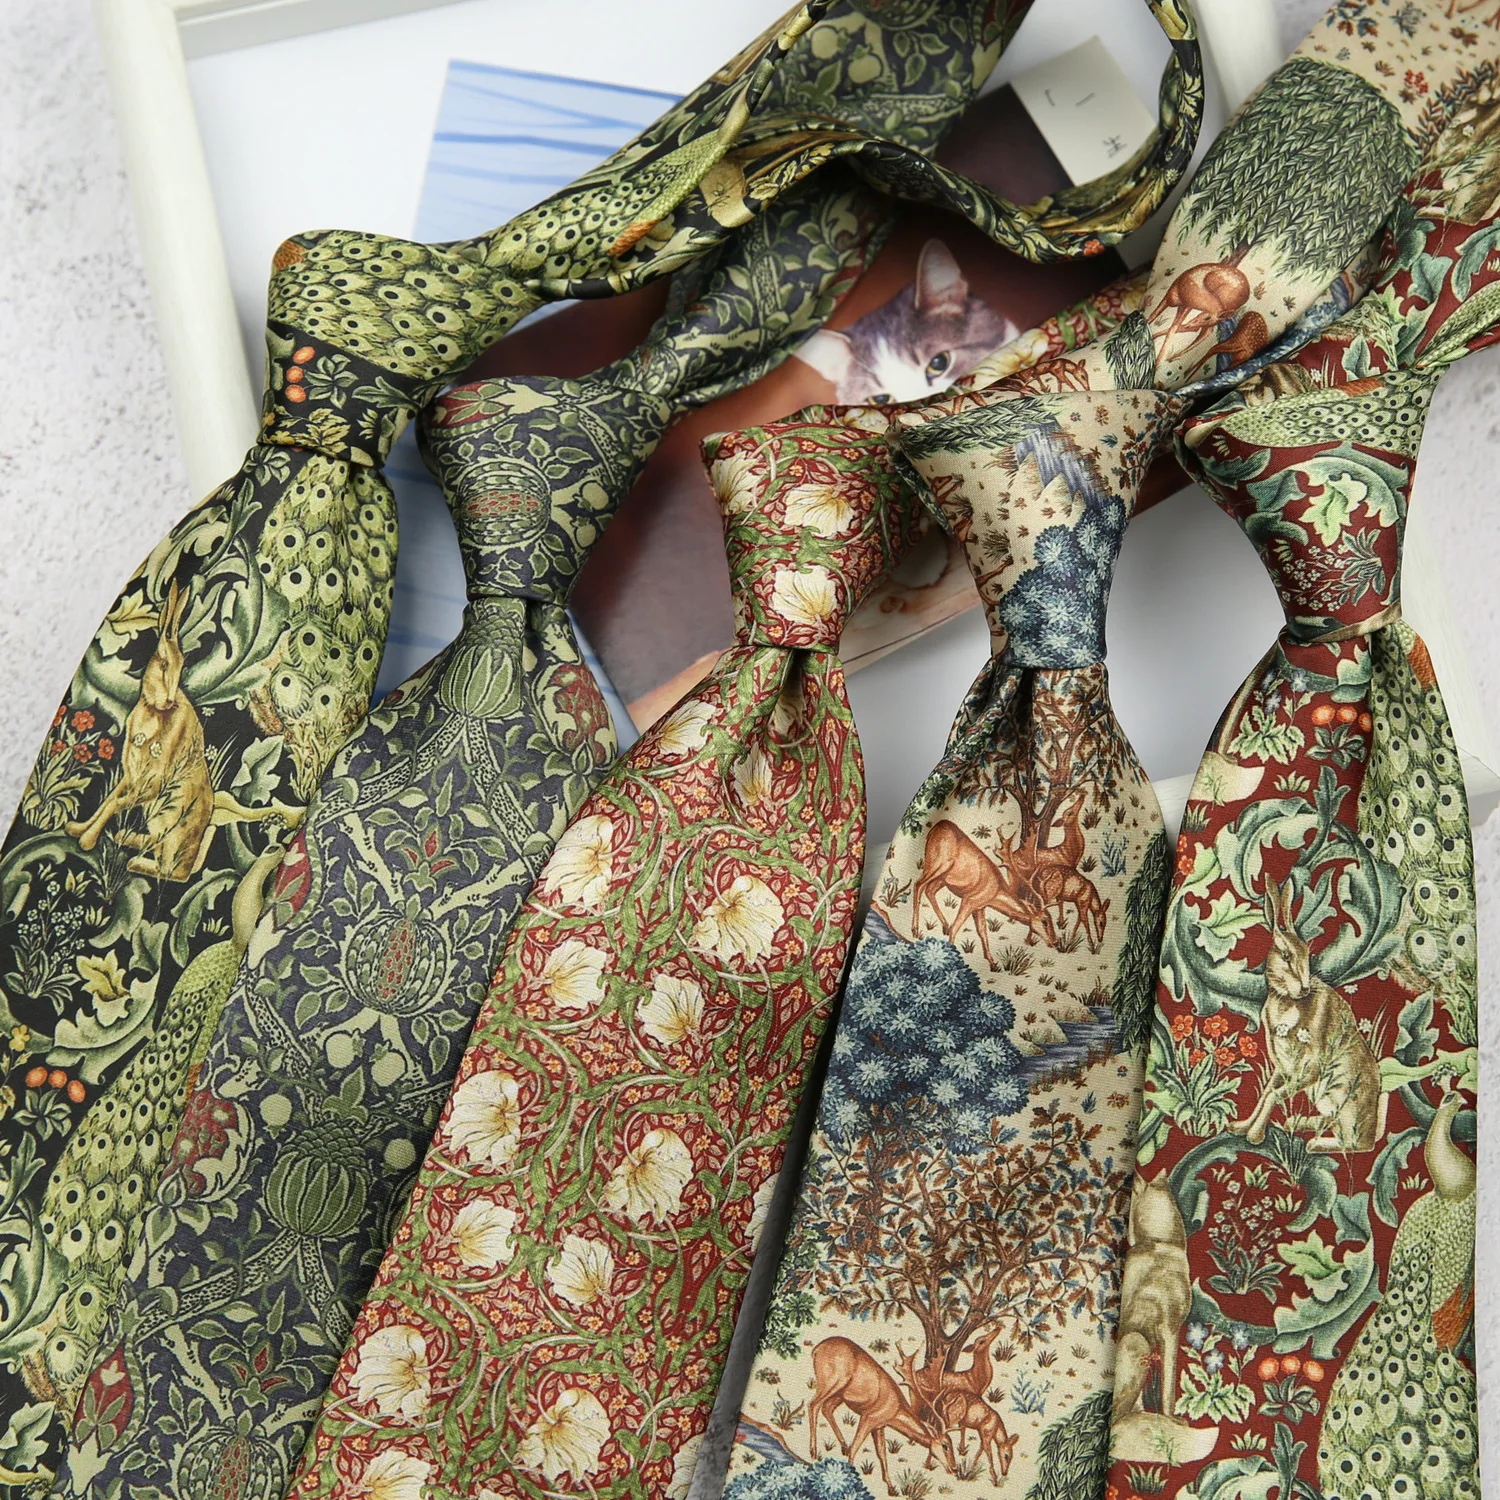 

New Vintage Polyester Printed Neck Ties for Men Wedding Party Business Necktie Black Self Tie Gentlemen Gravatas Slim Neckties